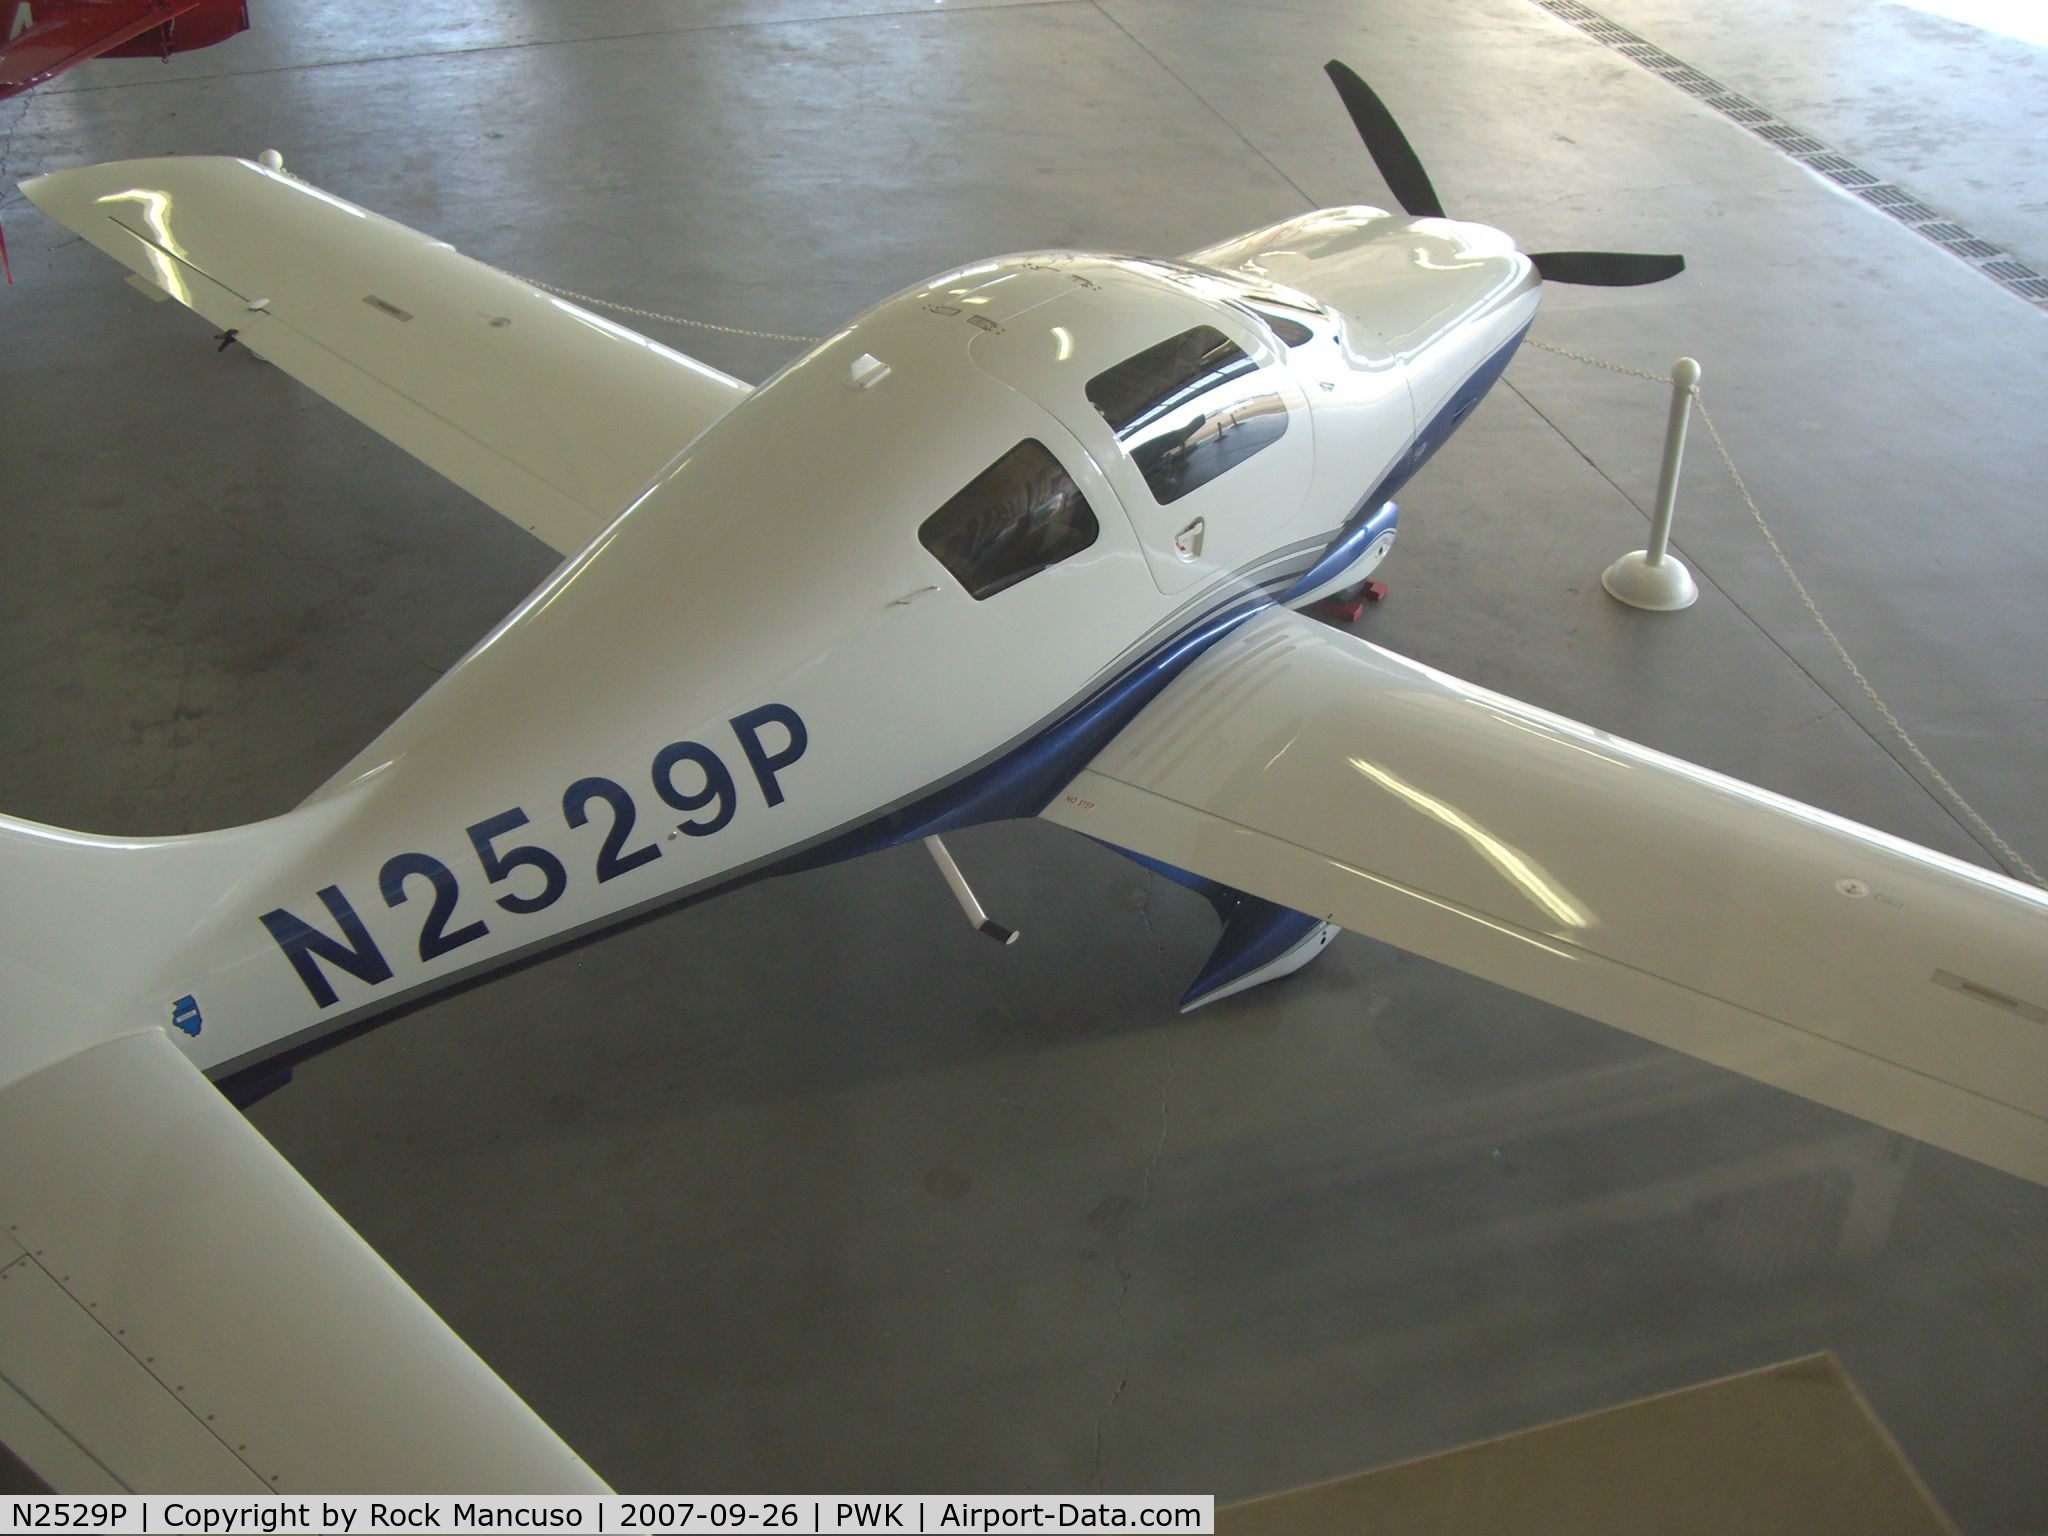 N2529P, 2005 Lancair LC41-550FG C/N 41521, N2529P hangared at PWK